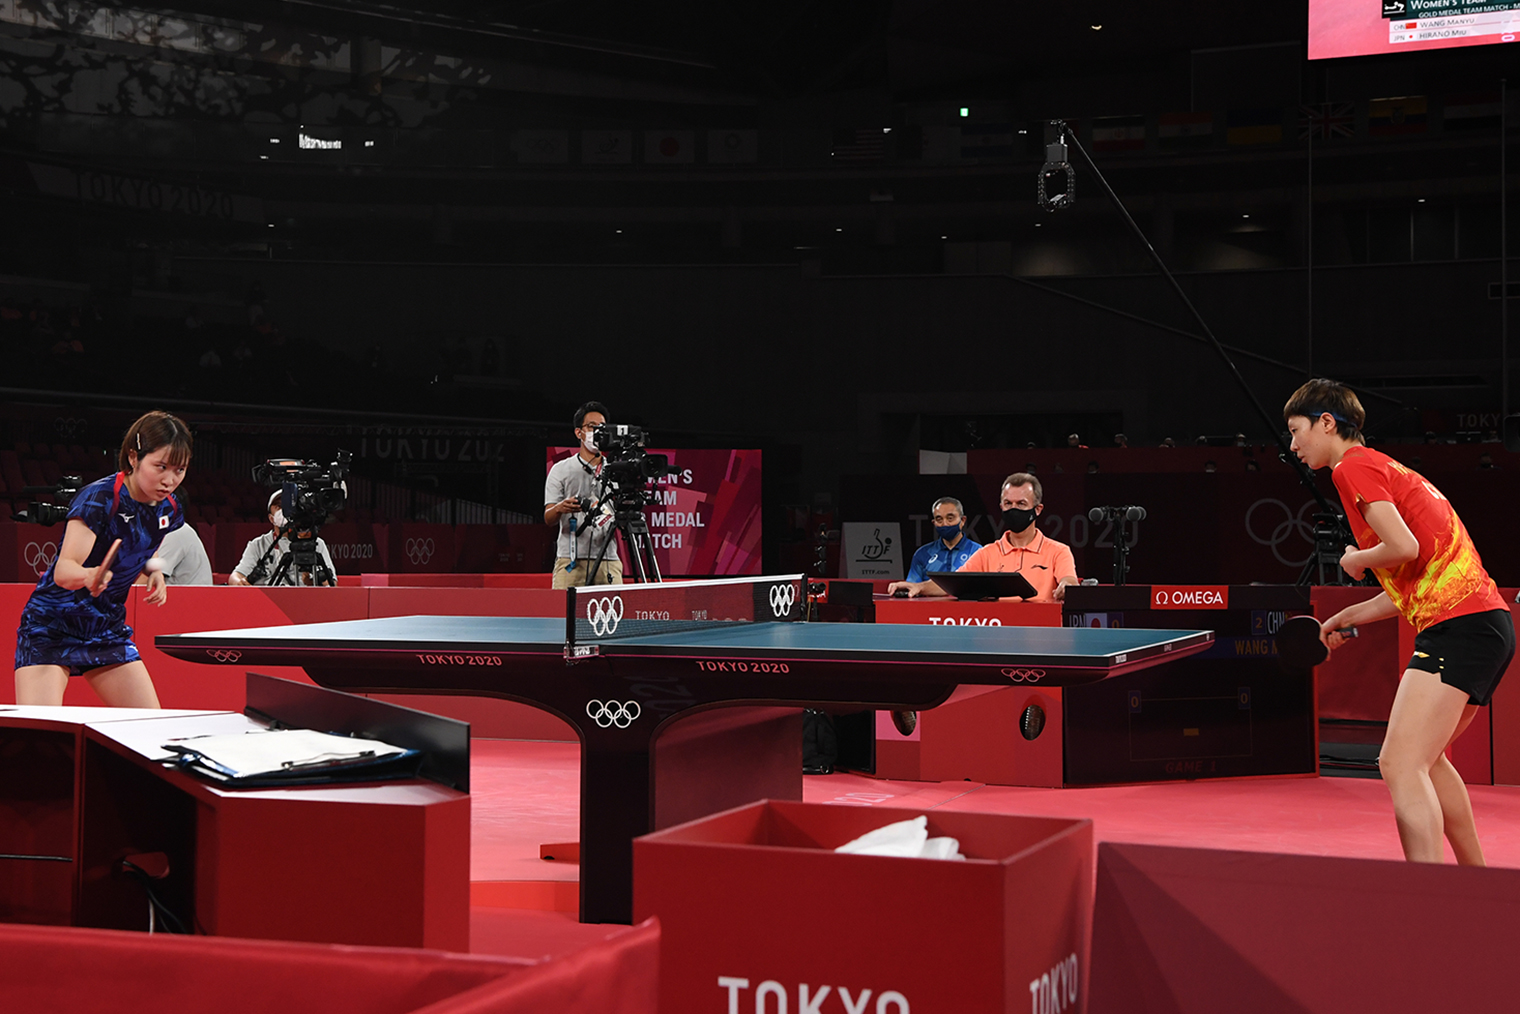 Профессиональный стол на Олимпиаде в Токио в 2021 году. Фотография: Kaz Photography / Getty Images